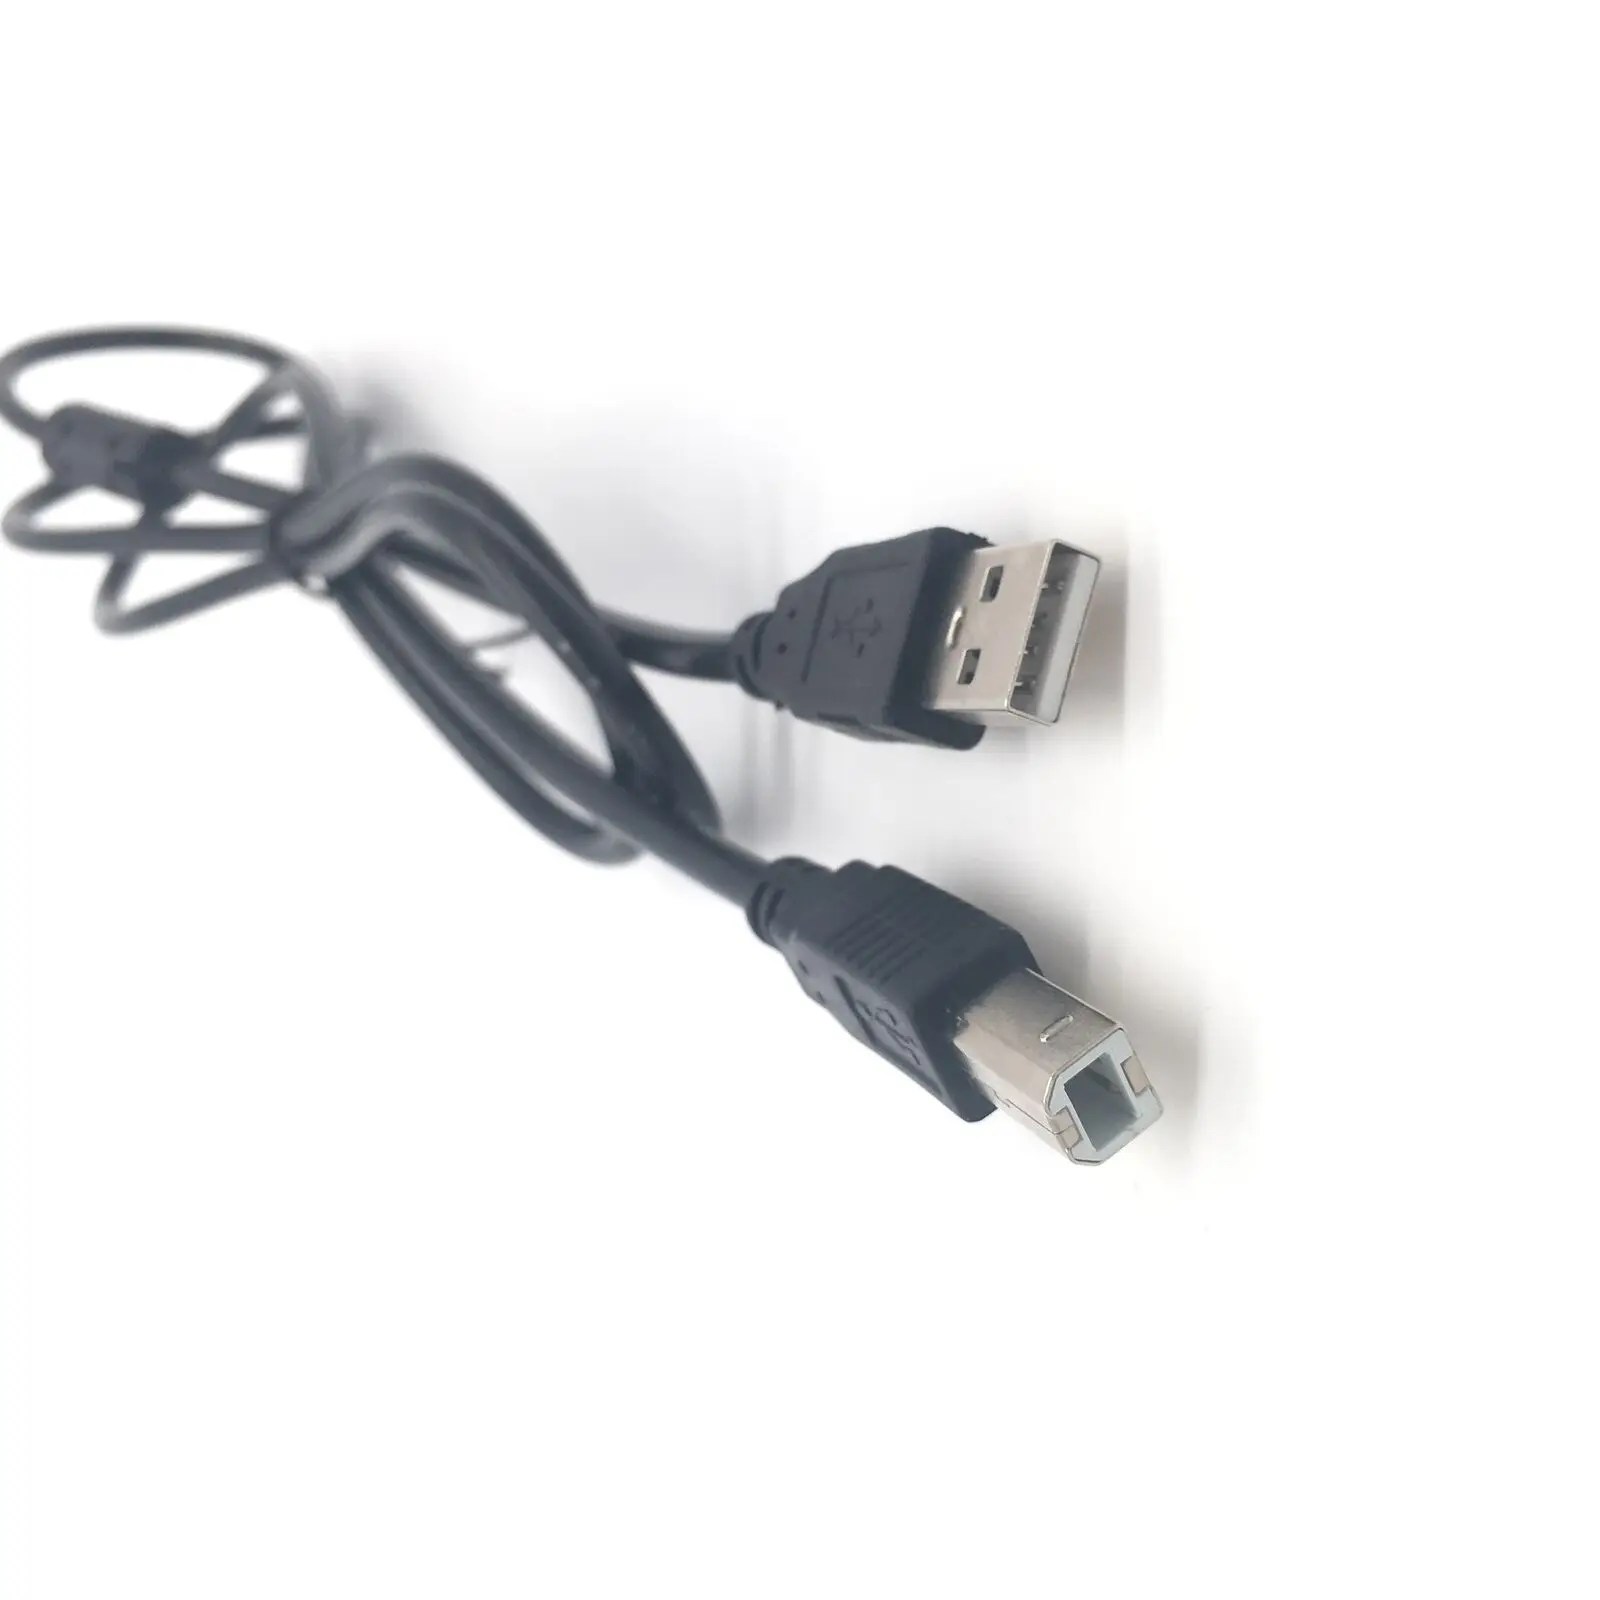 

USB Cord Printer for Epson STYLUS NX110 NX125 NX210 NX127 NX115 NX200